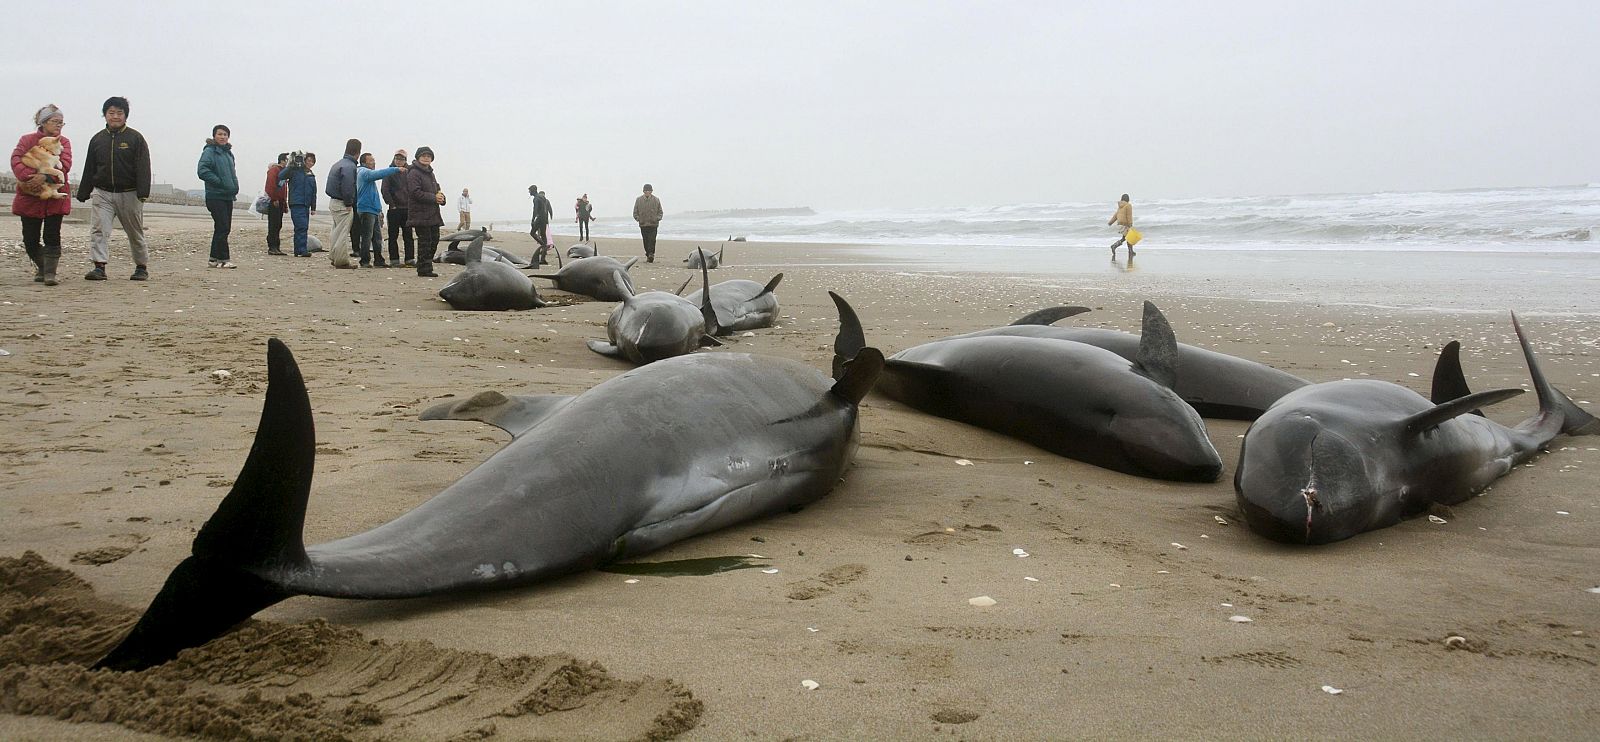 Residentes de la zona tratan de socorrer a los delfines varados en la arena en Hokota, al noreste de Japón.